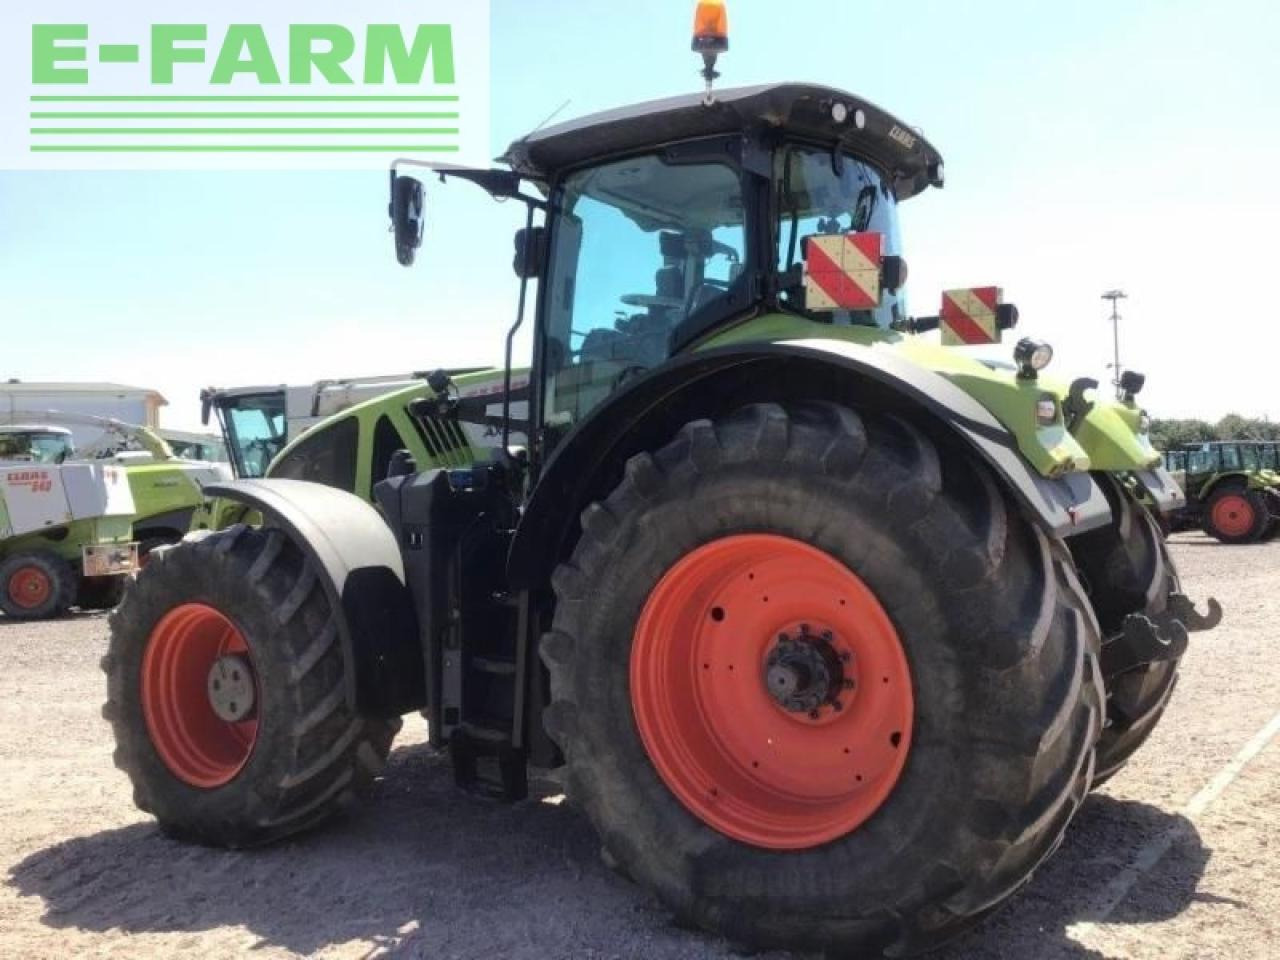 Farm tractor CLAAS axion 950